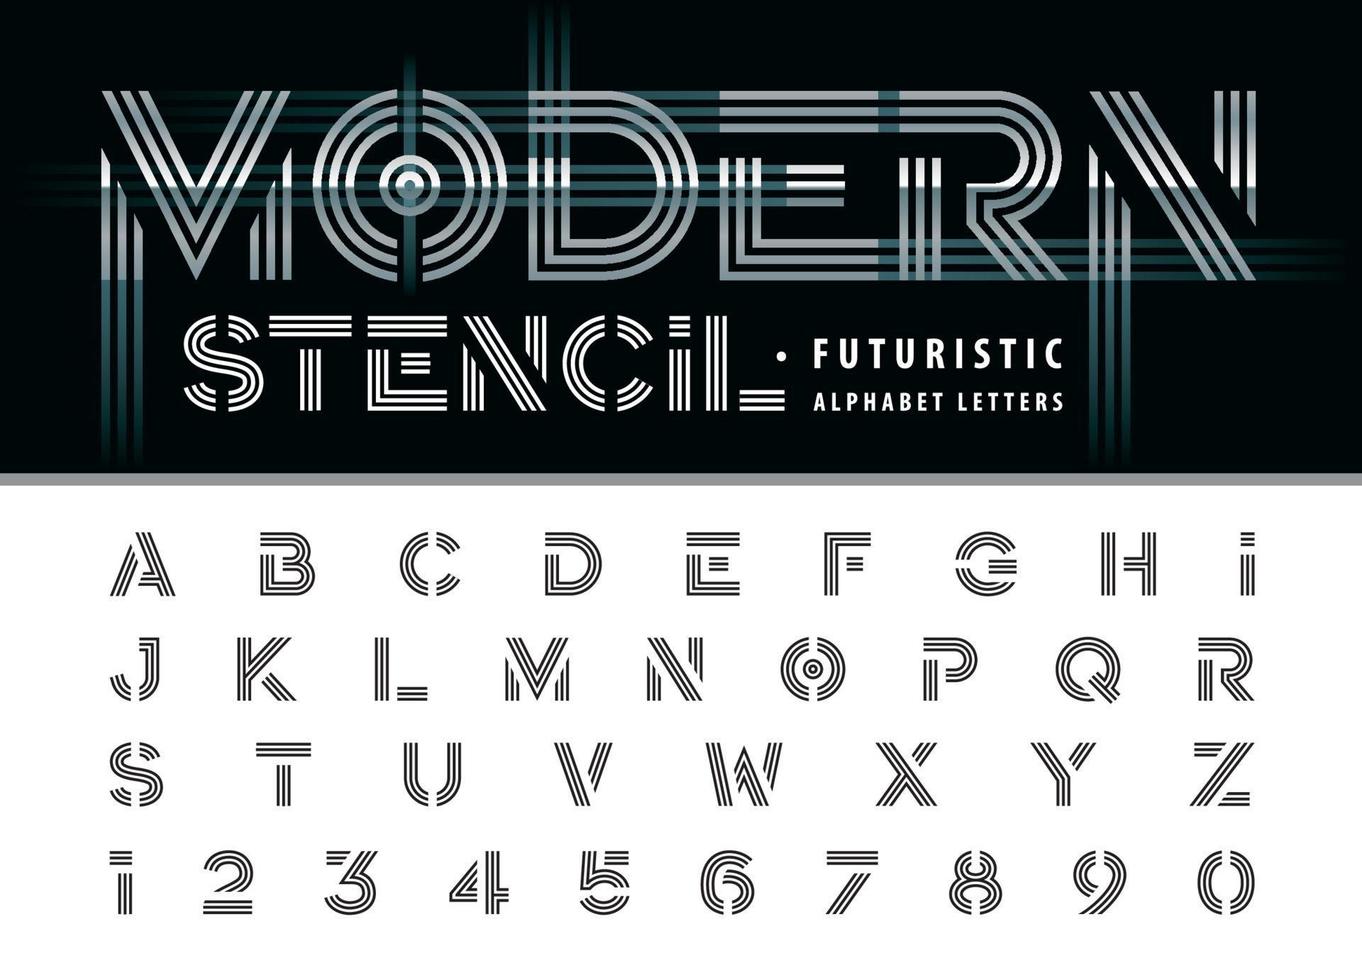 lettres et chiffres de l'alphabet moderne à trois lignes, jeu de polices minimal en gras pour la technologie, la mode, le futuriste. vecteur